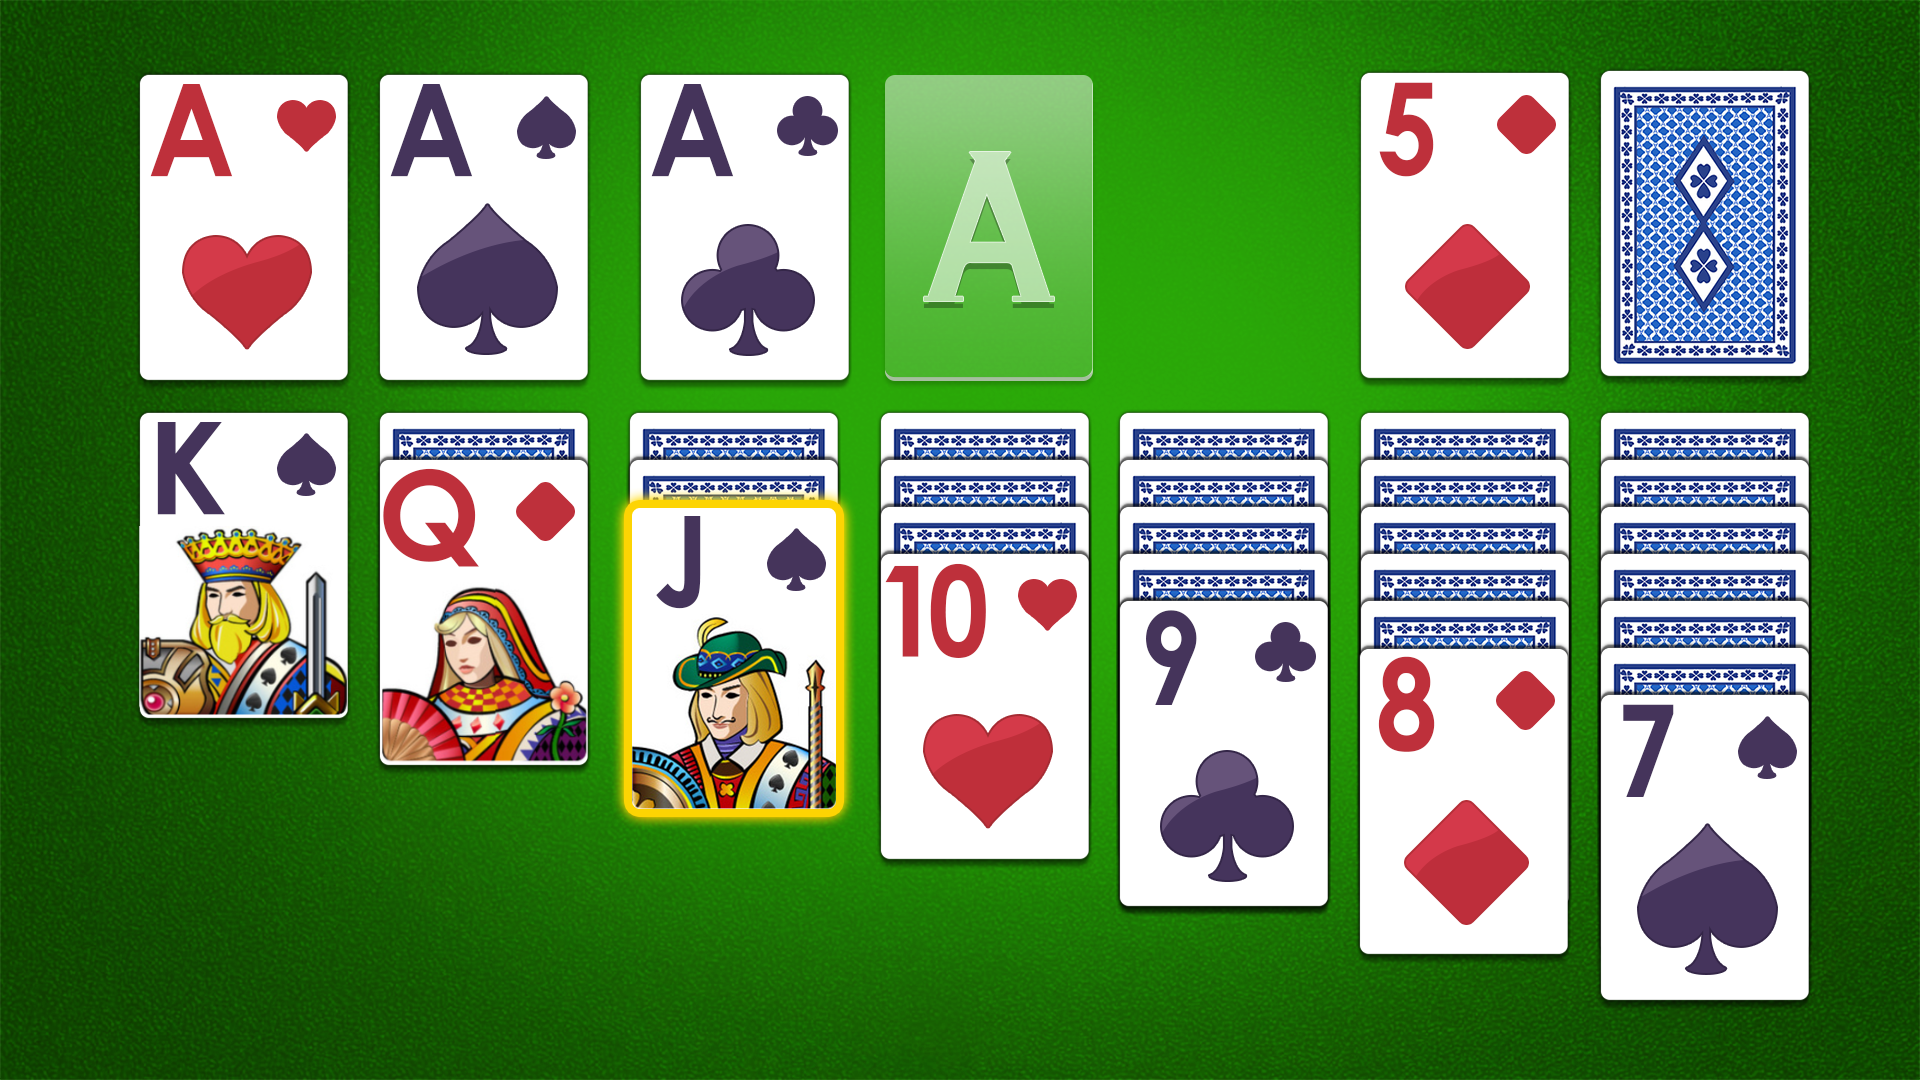 Screenshot 1 of Solitaire Klondike Card Games 1.0.10